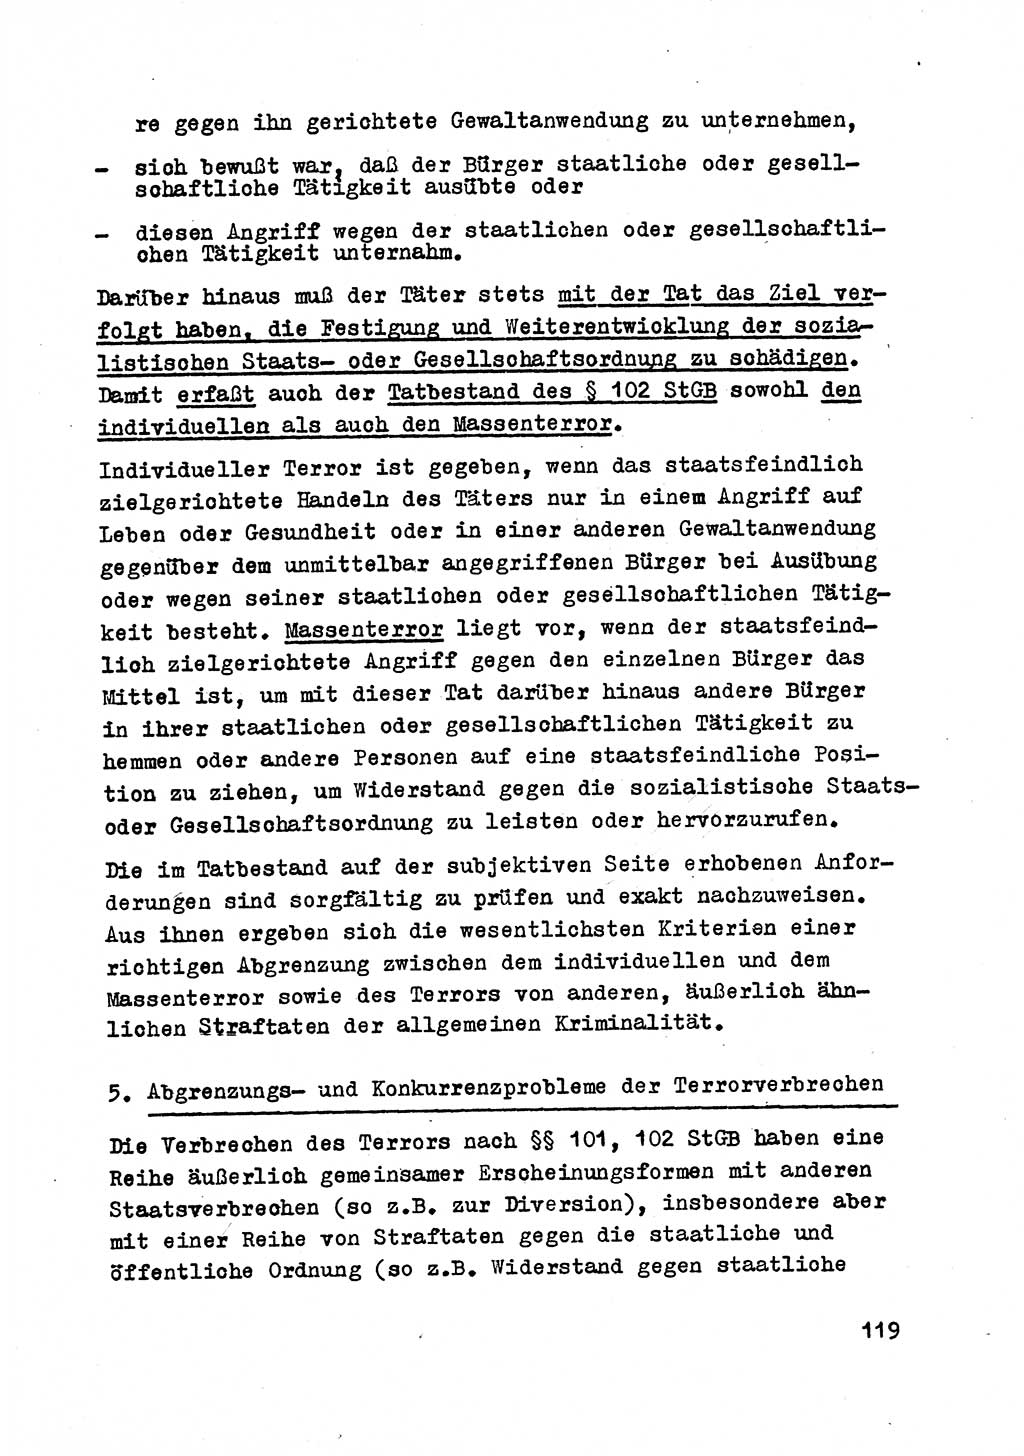 Strafrecht der DDR (Deutsche Demokratische Republik), Besonderer Teil, Lehrmaterial, Heft 2 1969, Seite 119 (Strafr. DDR BT Lehrmat. H. 2 1969, S. 119)